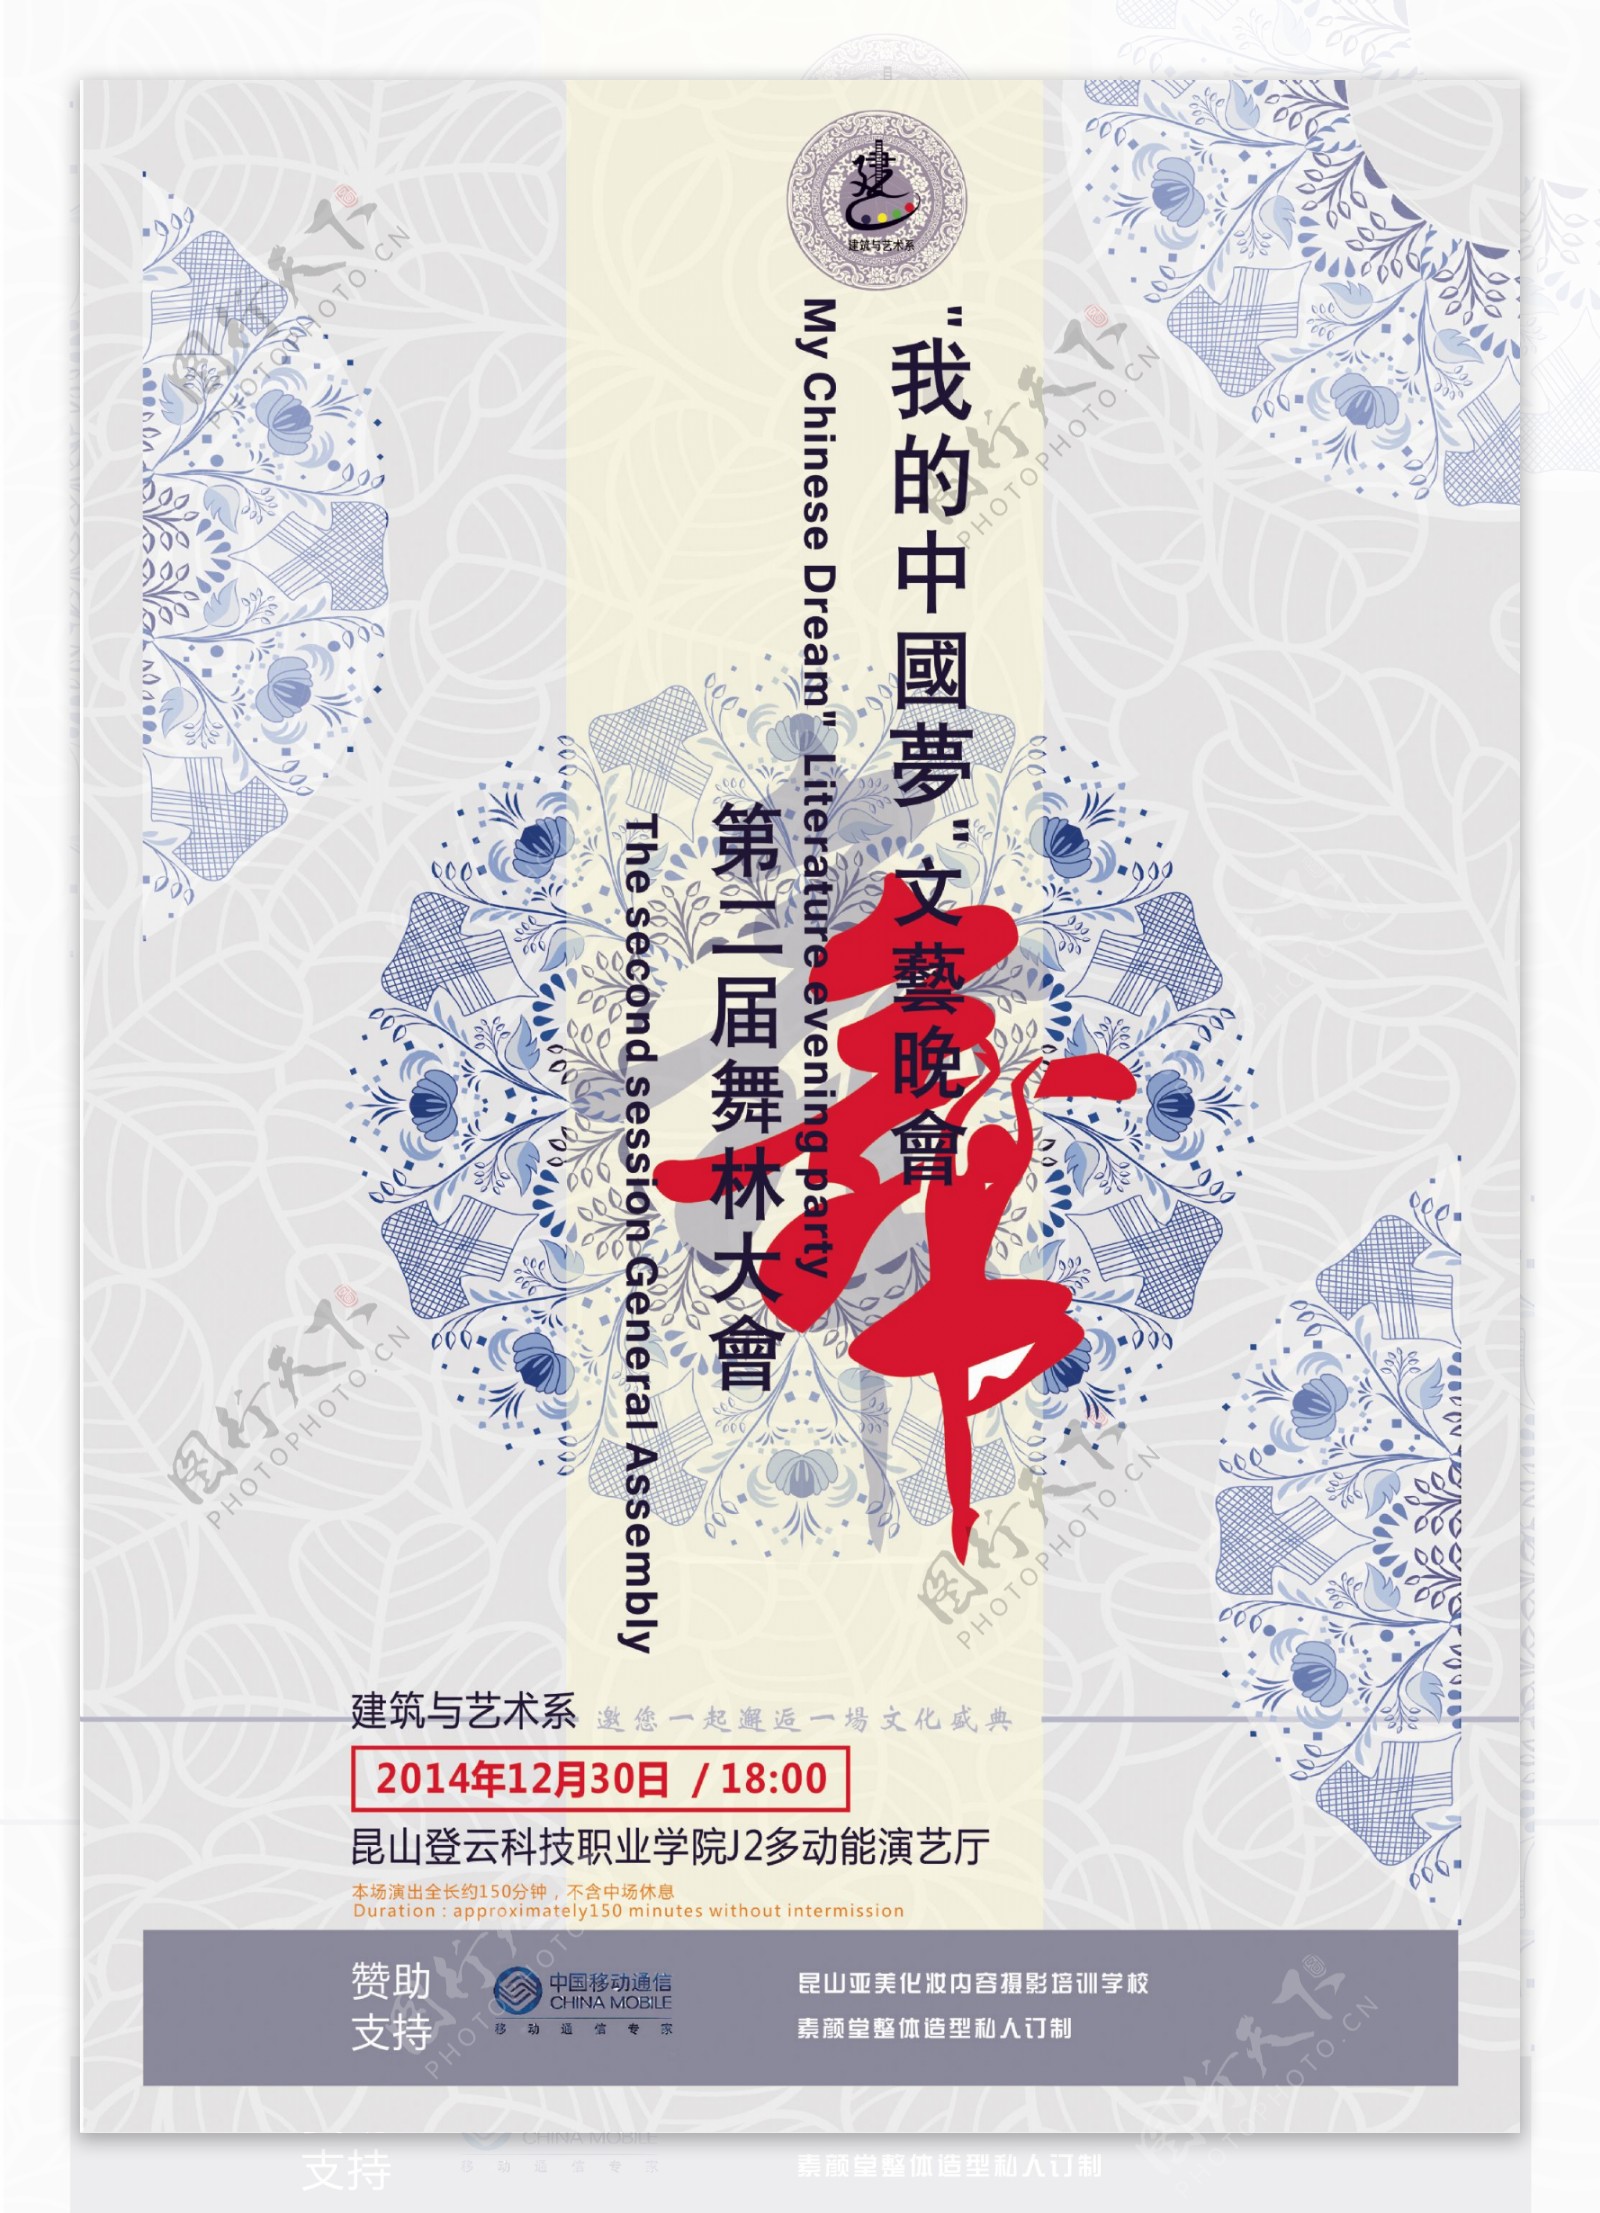 我的中国梦文艺晚会暨第二届舞林大会海报